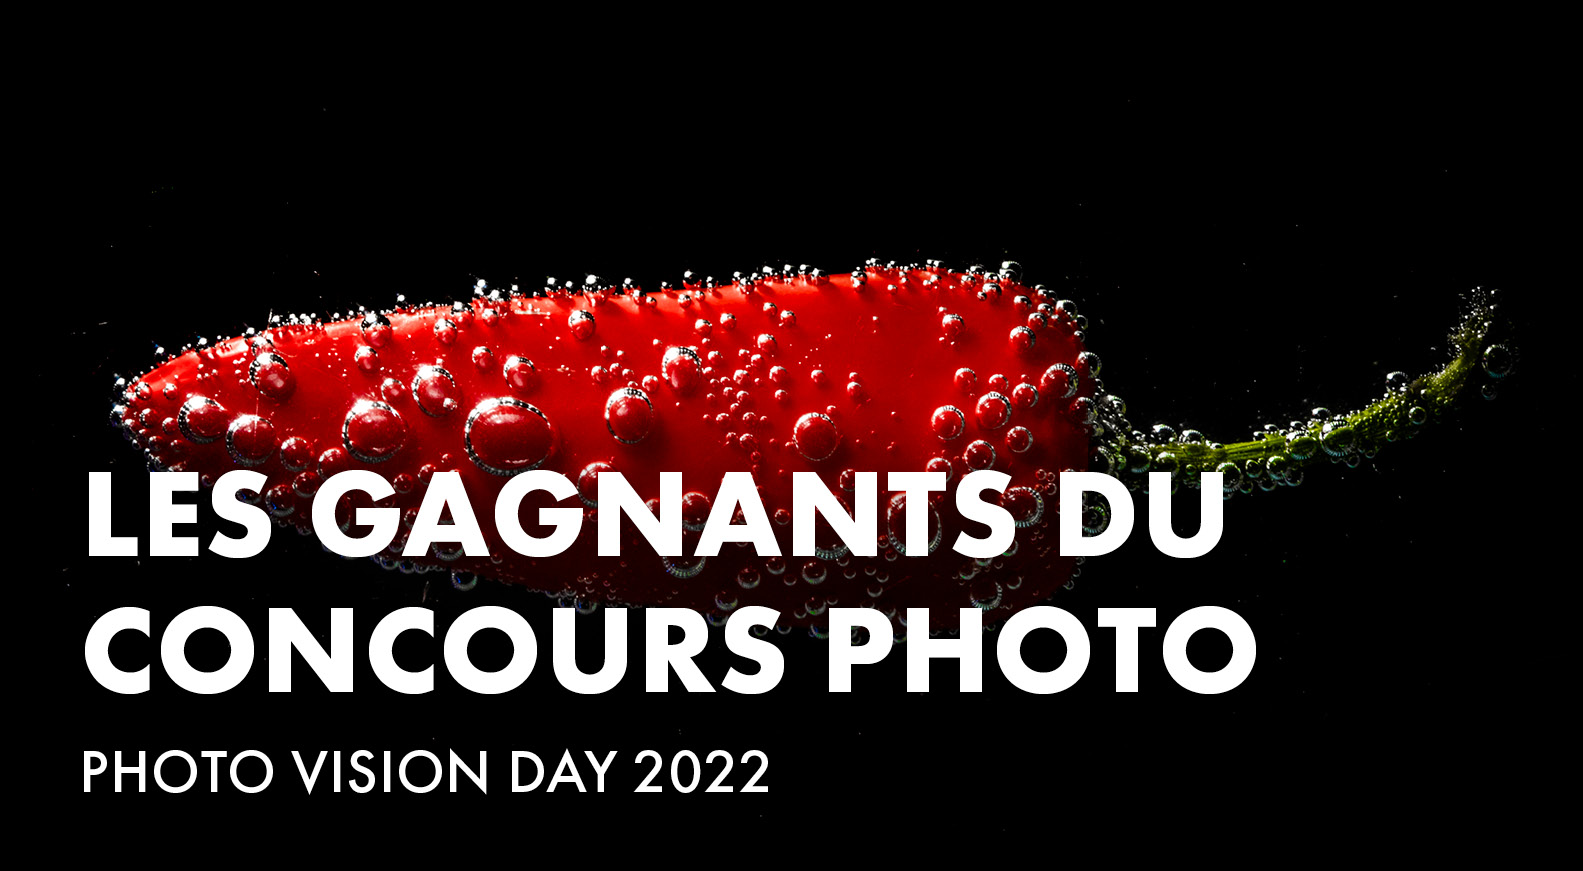 Les gagnants du concours Photo Vision Day 2022